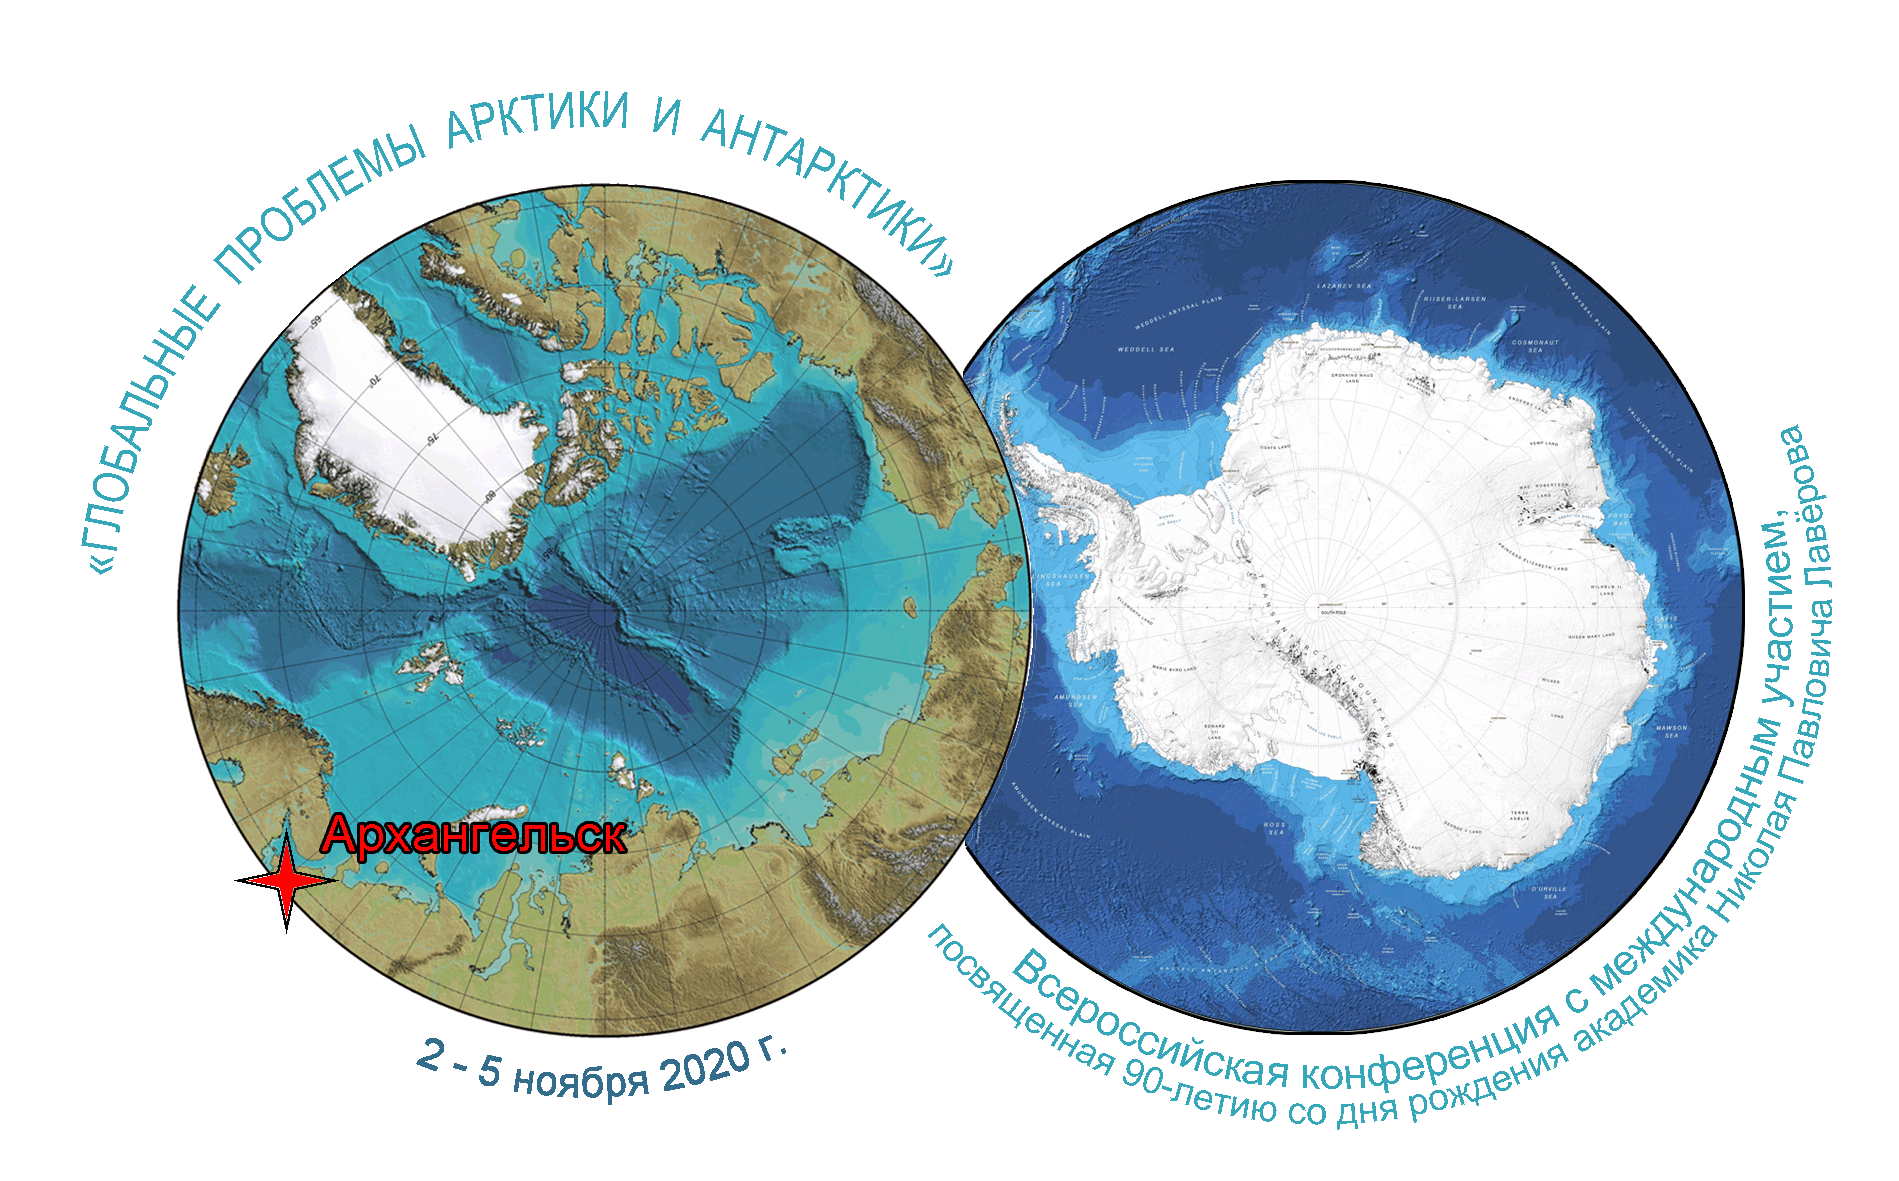 Арктика Антарктика Антарктида. Антарктида Арктика Антарктика разница. Арктика и Антарктида на карте. Северный полюс, Арктика и Южный полюс, Антарктида.